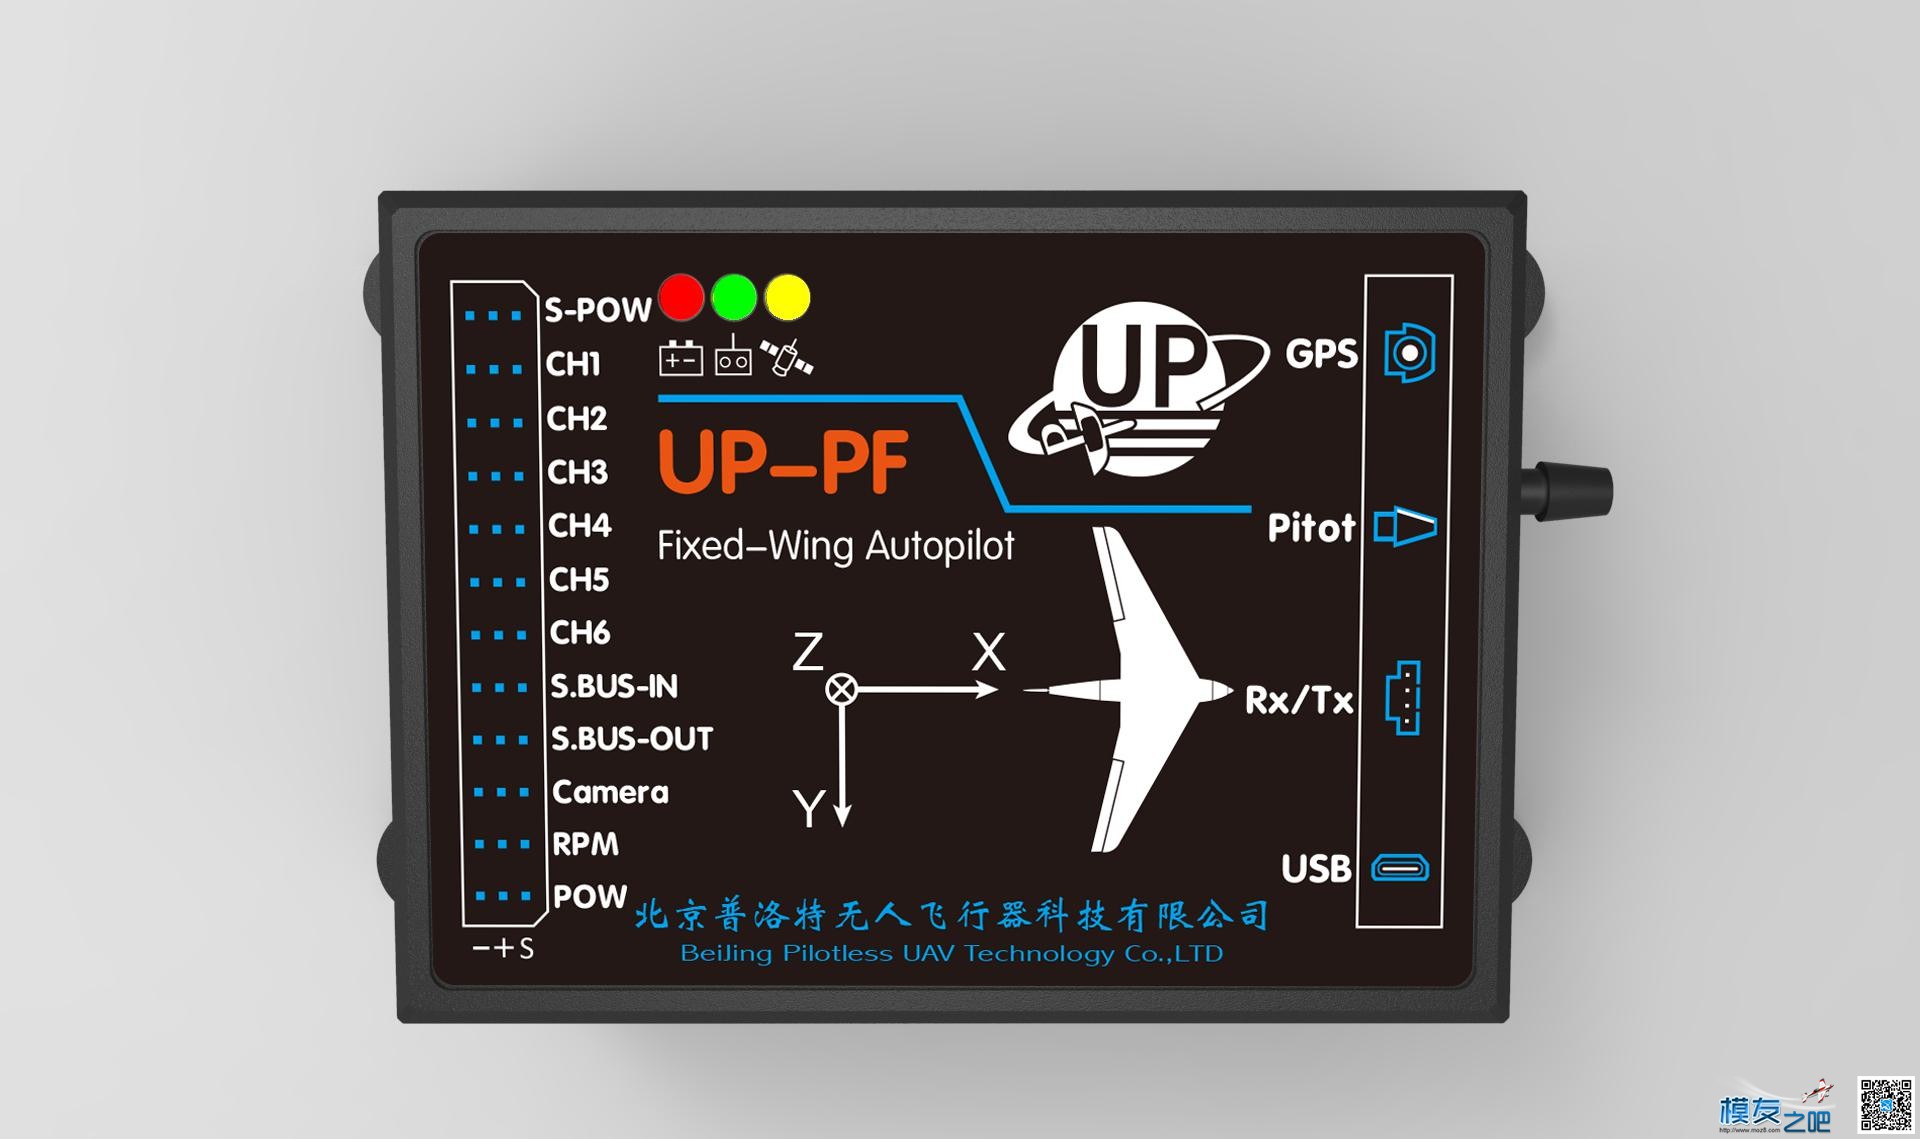 【蓝羽测评】普洛特UP-PF飞控，叼叼哒 无人机,固定翼,天线,舵机,飞控 作者:蓝羽 7242 